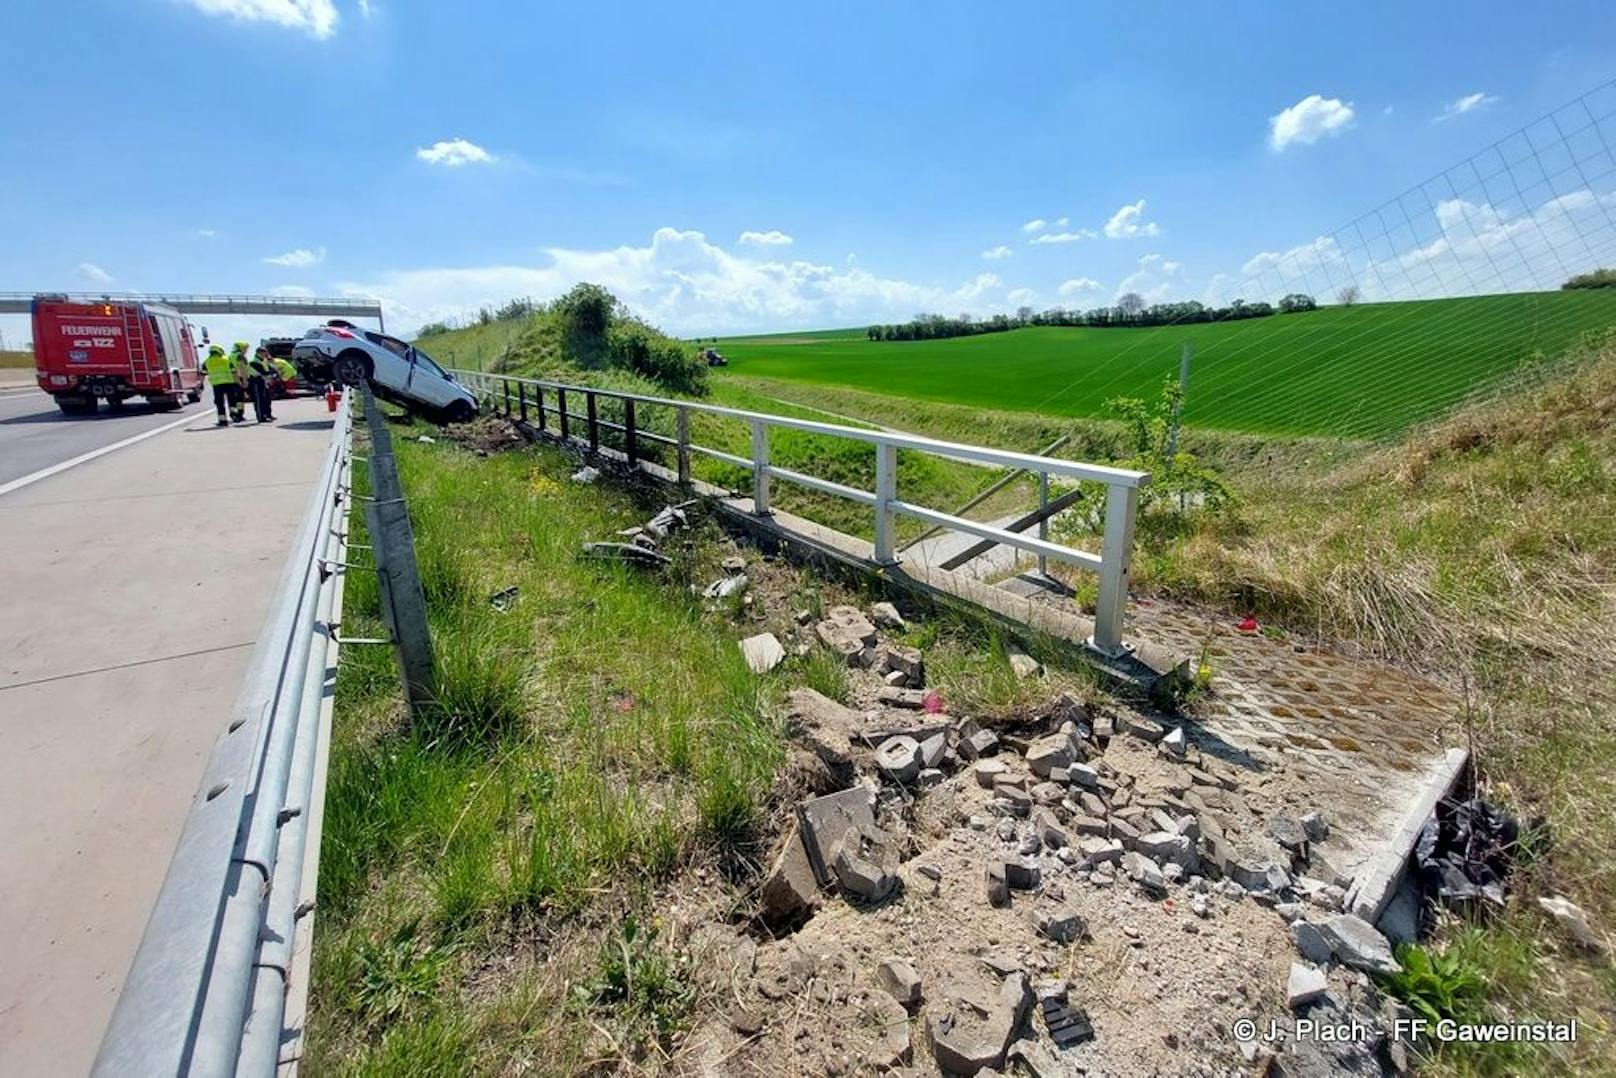 Spektakulärer Crash: Auto landete auf A5 auf Leitschiene